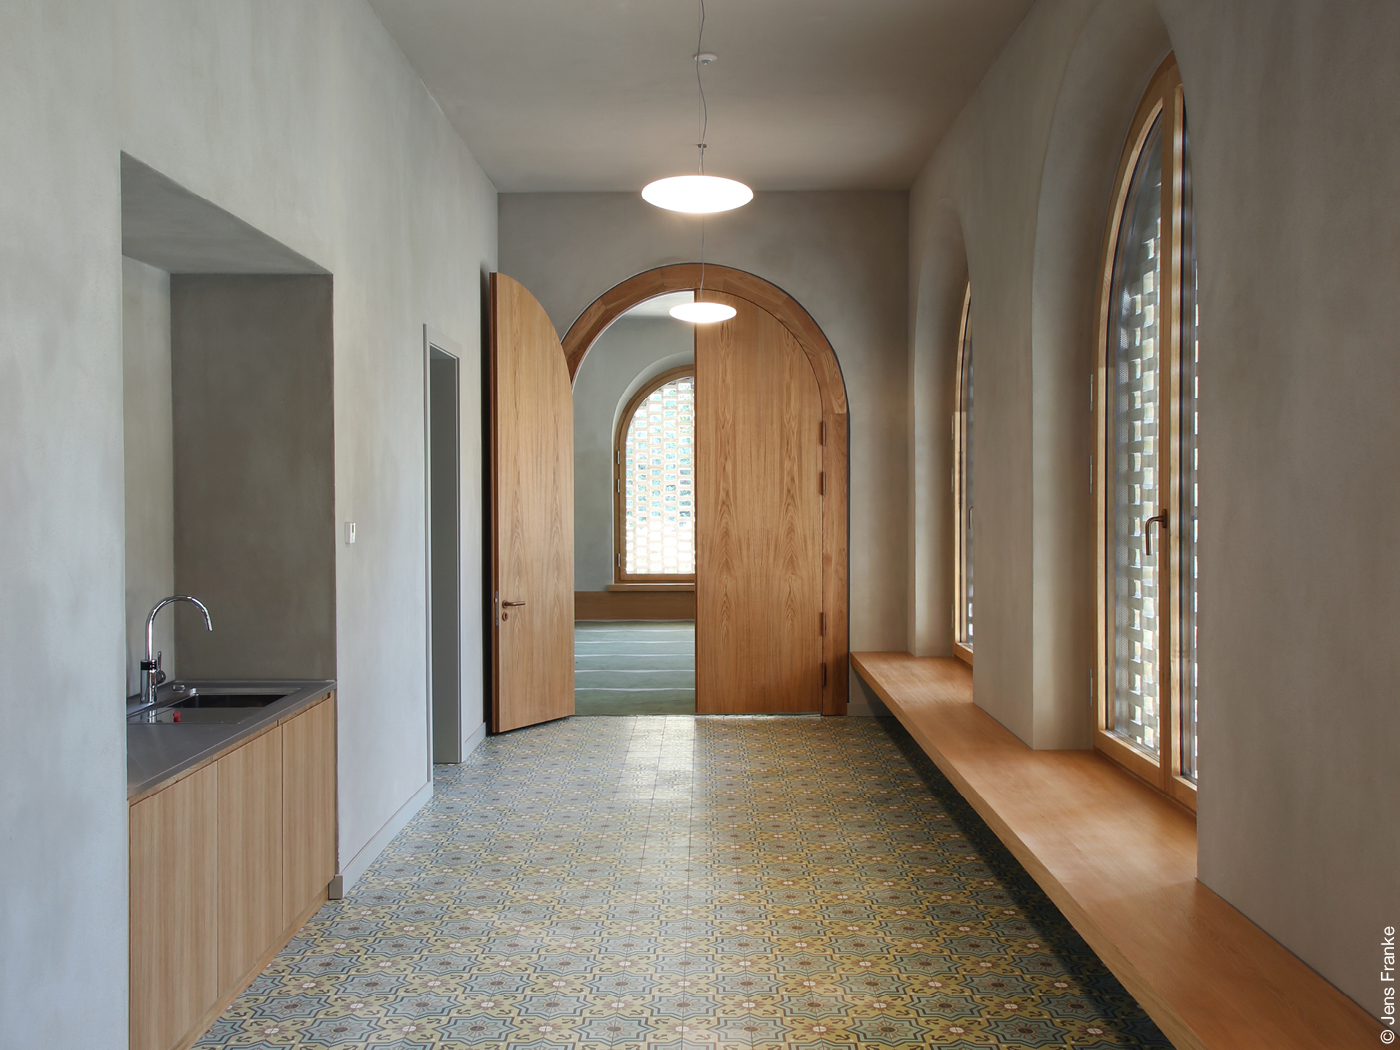 Innenraum vom muslimischen Wasch- und Gebetshaus mit Rundbogentür